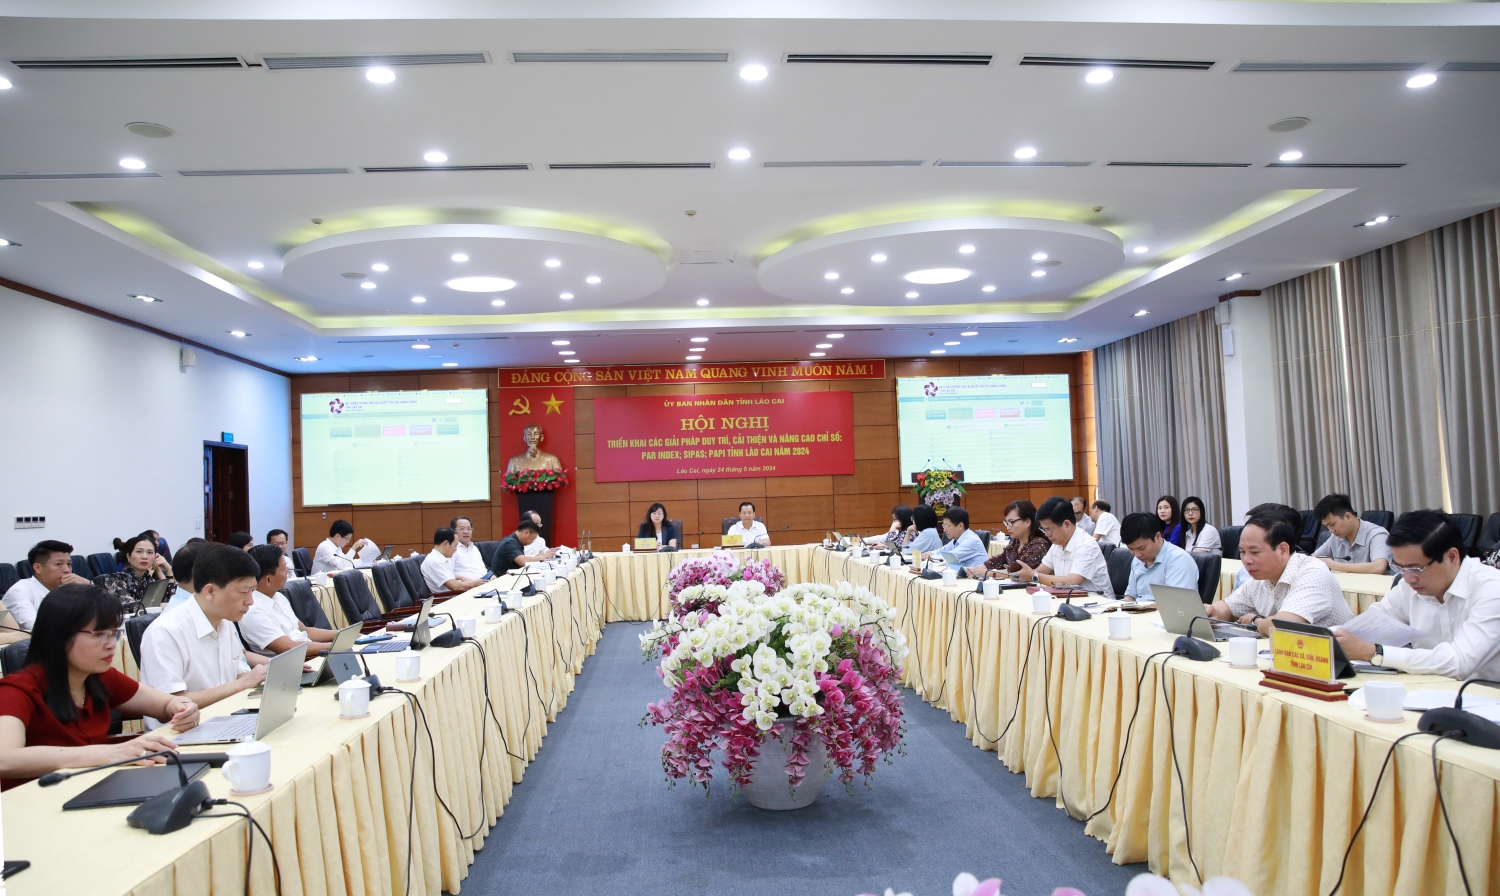 Hội nghị triển khai các giải pháp duy trì, cải thiện và nâng cao chỉ số PAR INDEX, SIPAS, PAPI tỉnh Lào Cai